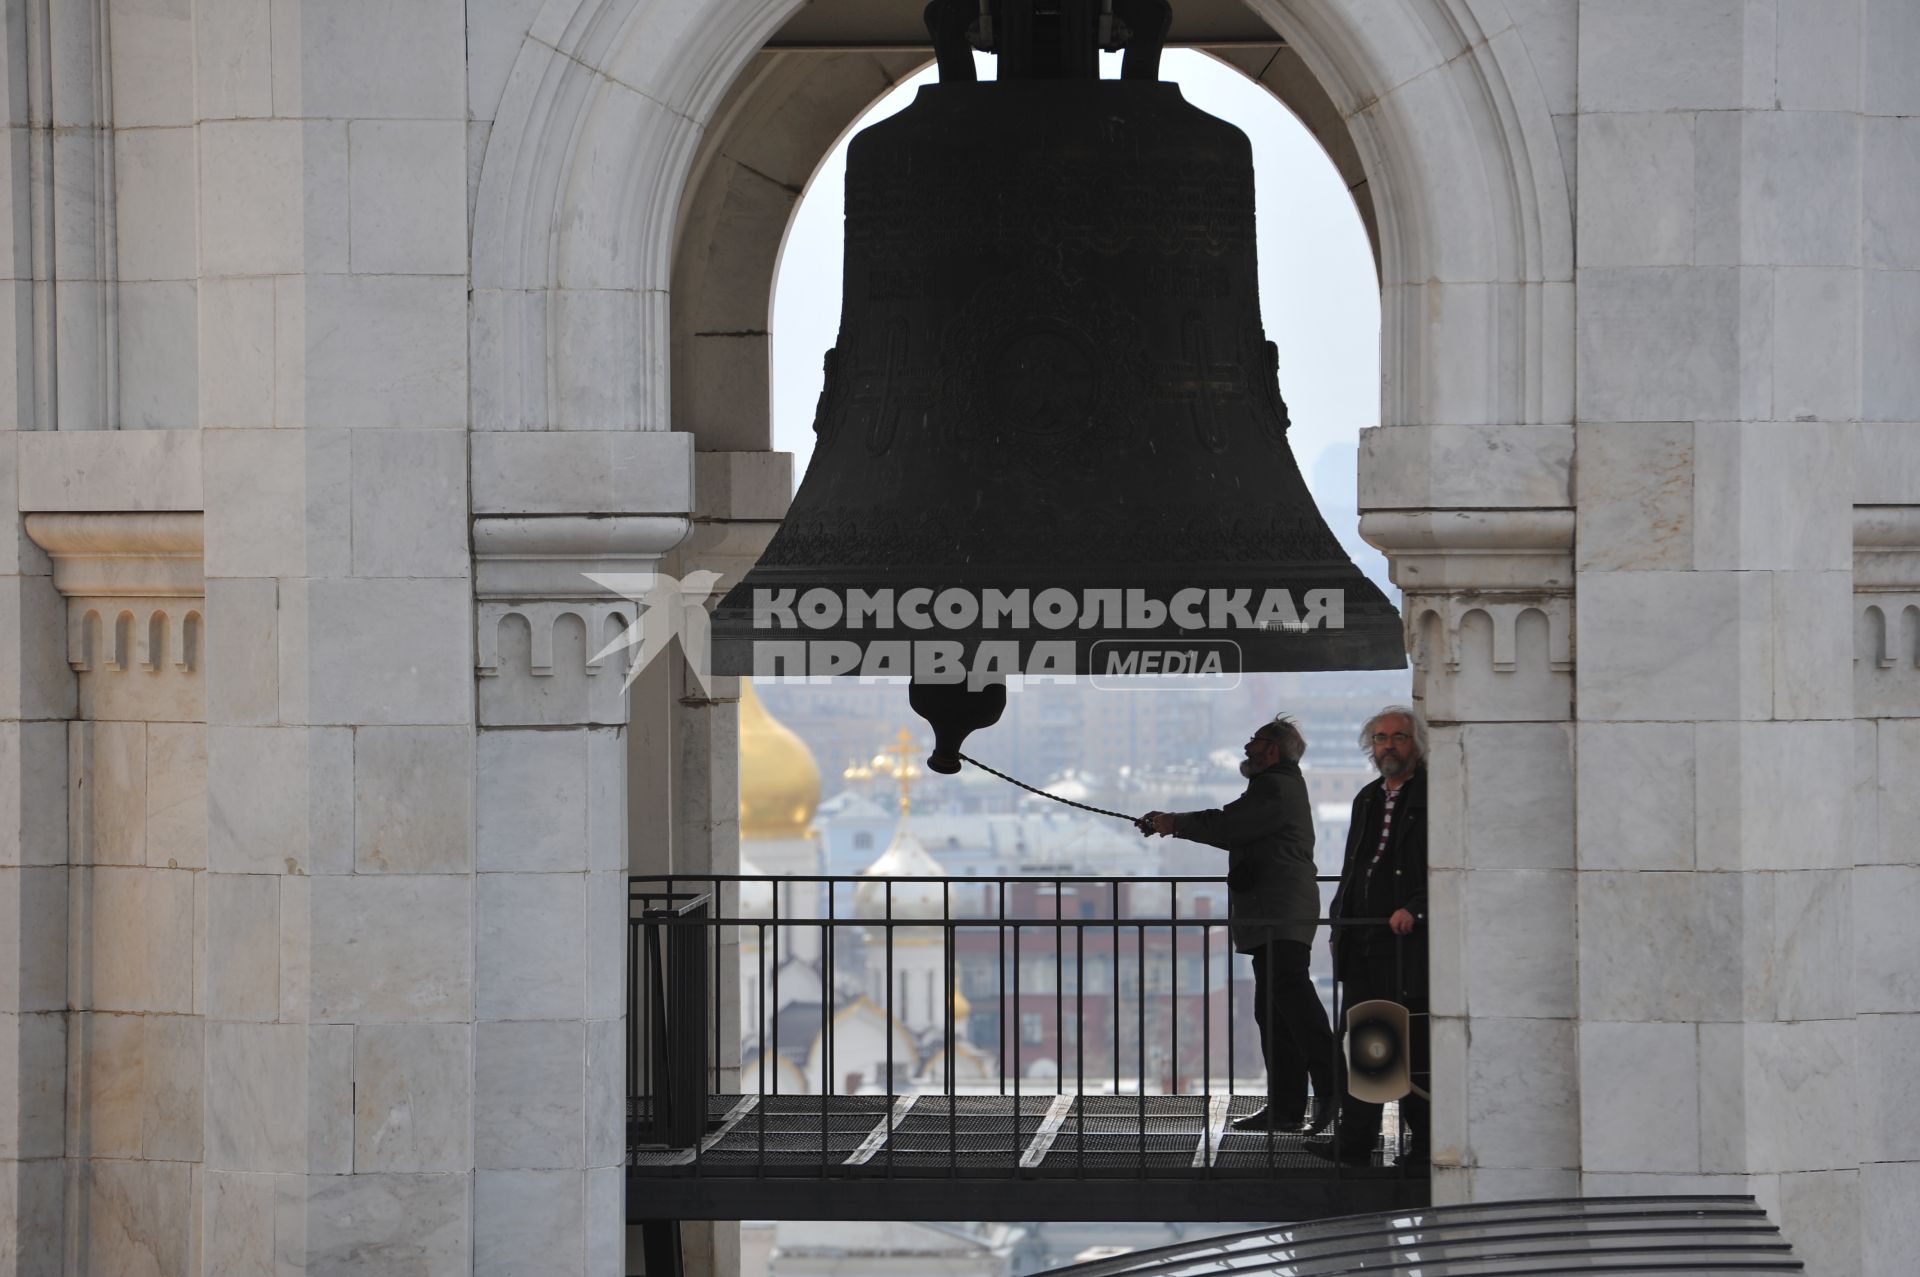 Колокольный звон Храм Христа Спасителя. На снимке: звонарь звонит в колокола.